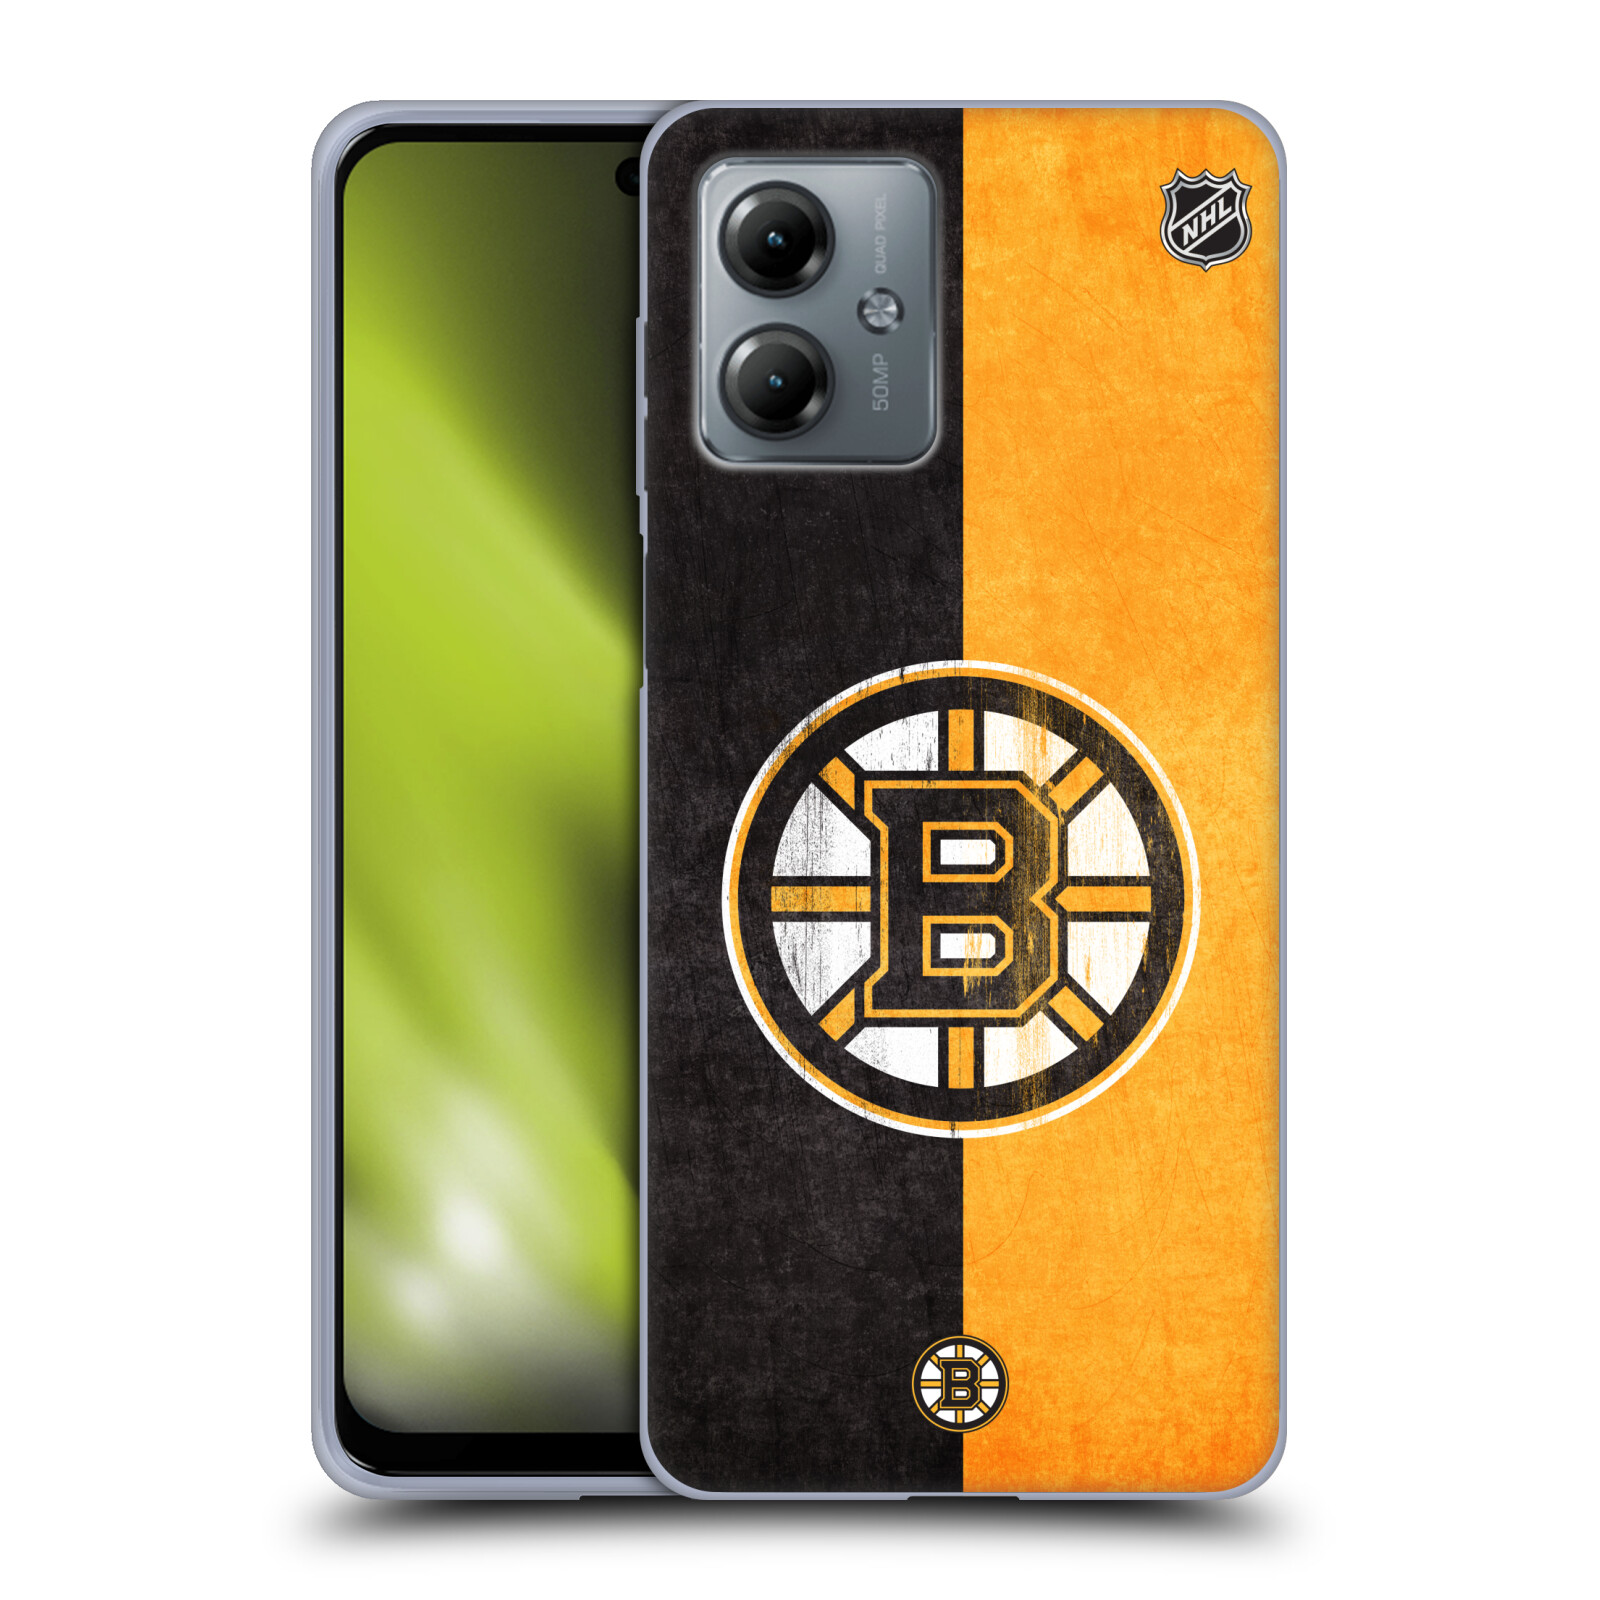 Silikonové pouzdro na mobil Motorola Moto G14 - NHL - Půlené logo Boston Bruins (Silikonový kryt, obal, pouzdro na mobilní telefon Motorola Moto G14 s licencovaným motivem NHL - Půlené logo Boston Bruins)